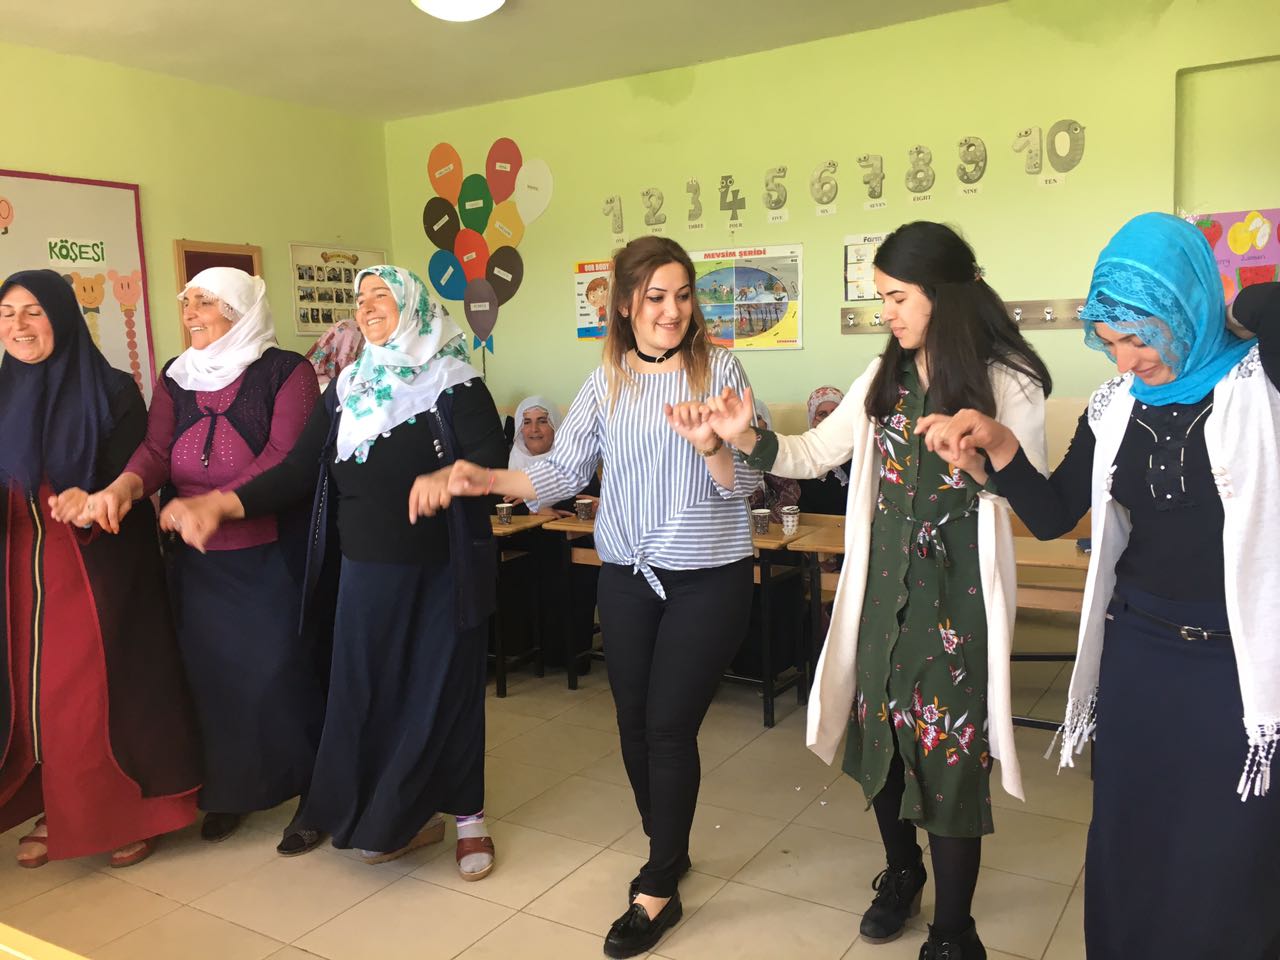 Güroymak İlçesine bağlı Özkavak köyü ilköğretim okulu tarafından Anneler Günü etkinliği düzenlendi.